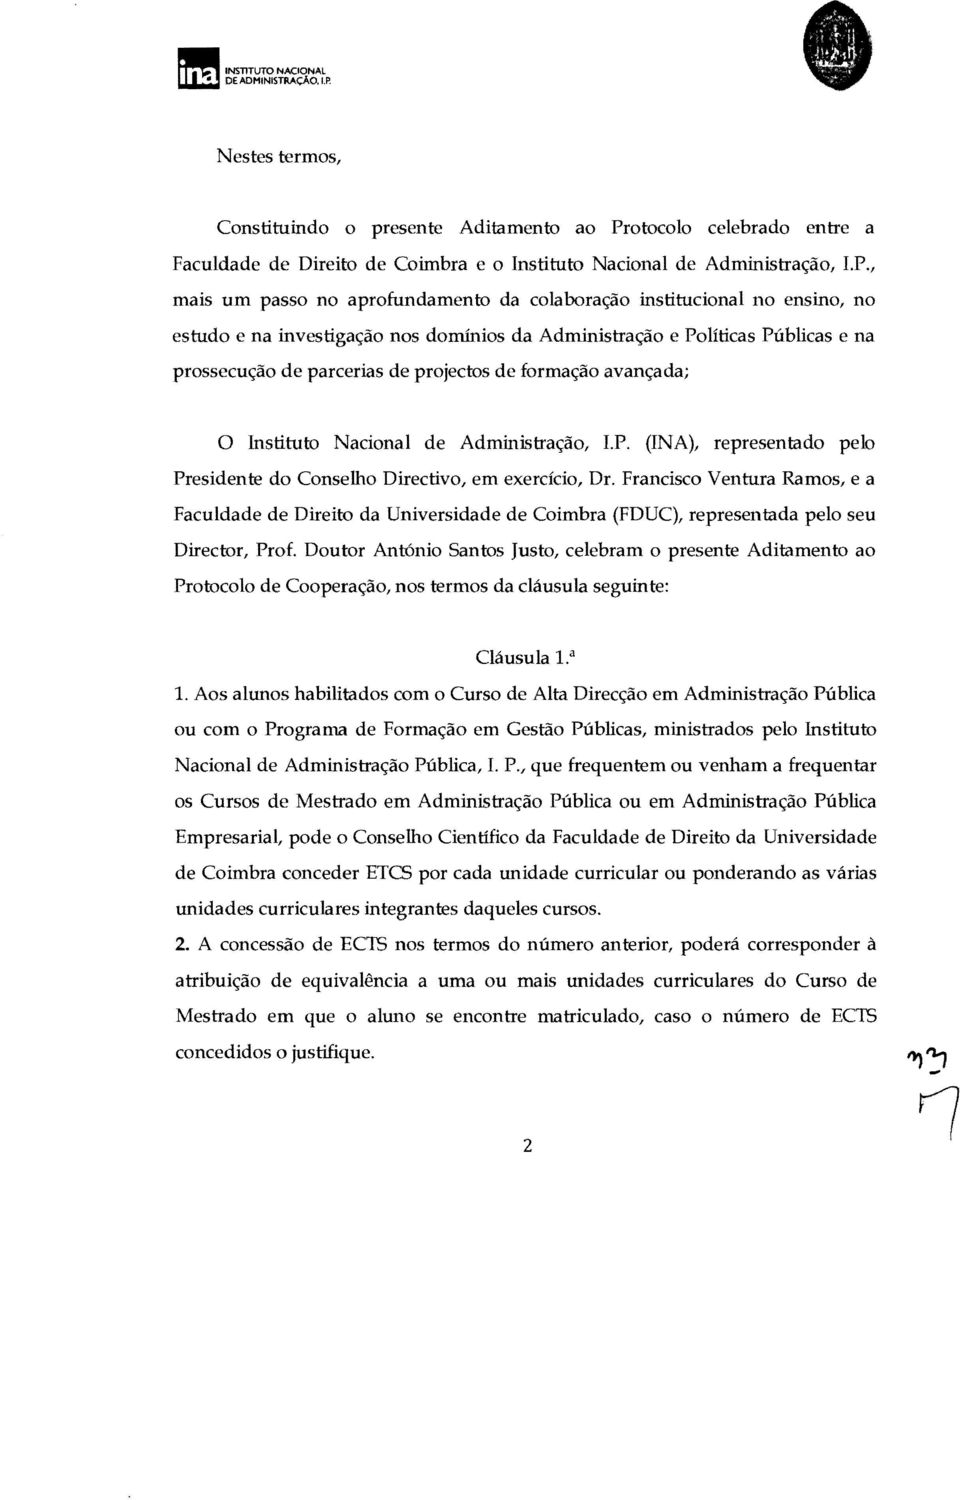 otocolo celebrado entre a Faculdade de Direito de Coimbra e o Instituto Nacional de Administração, I.P.